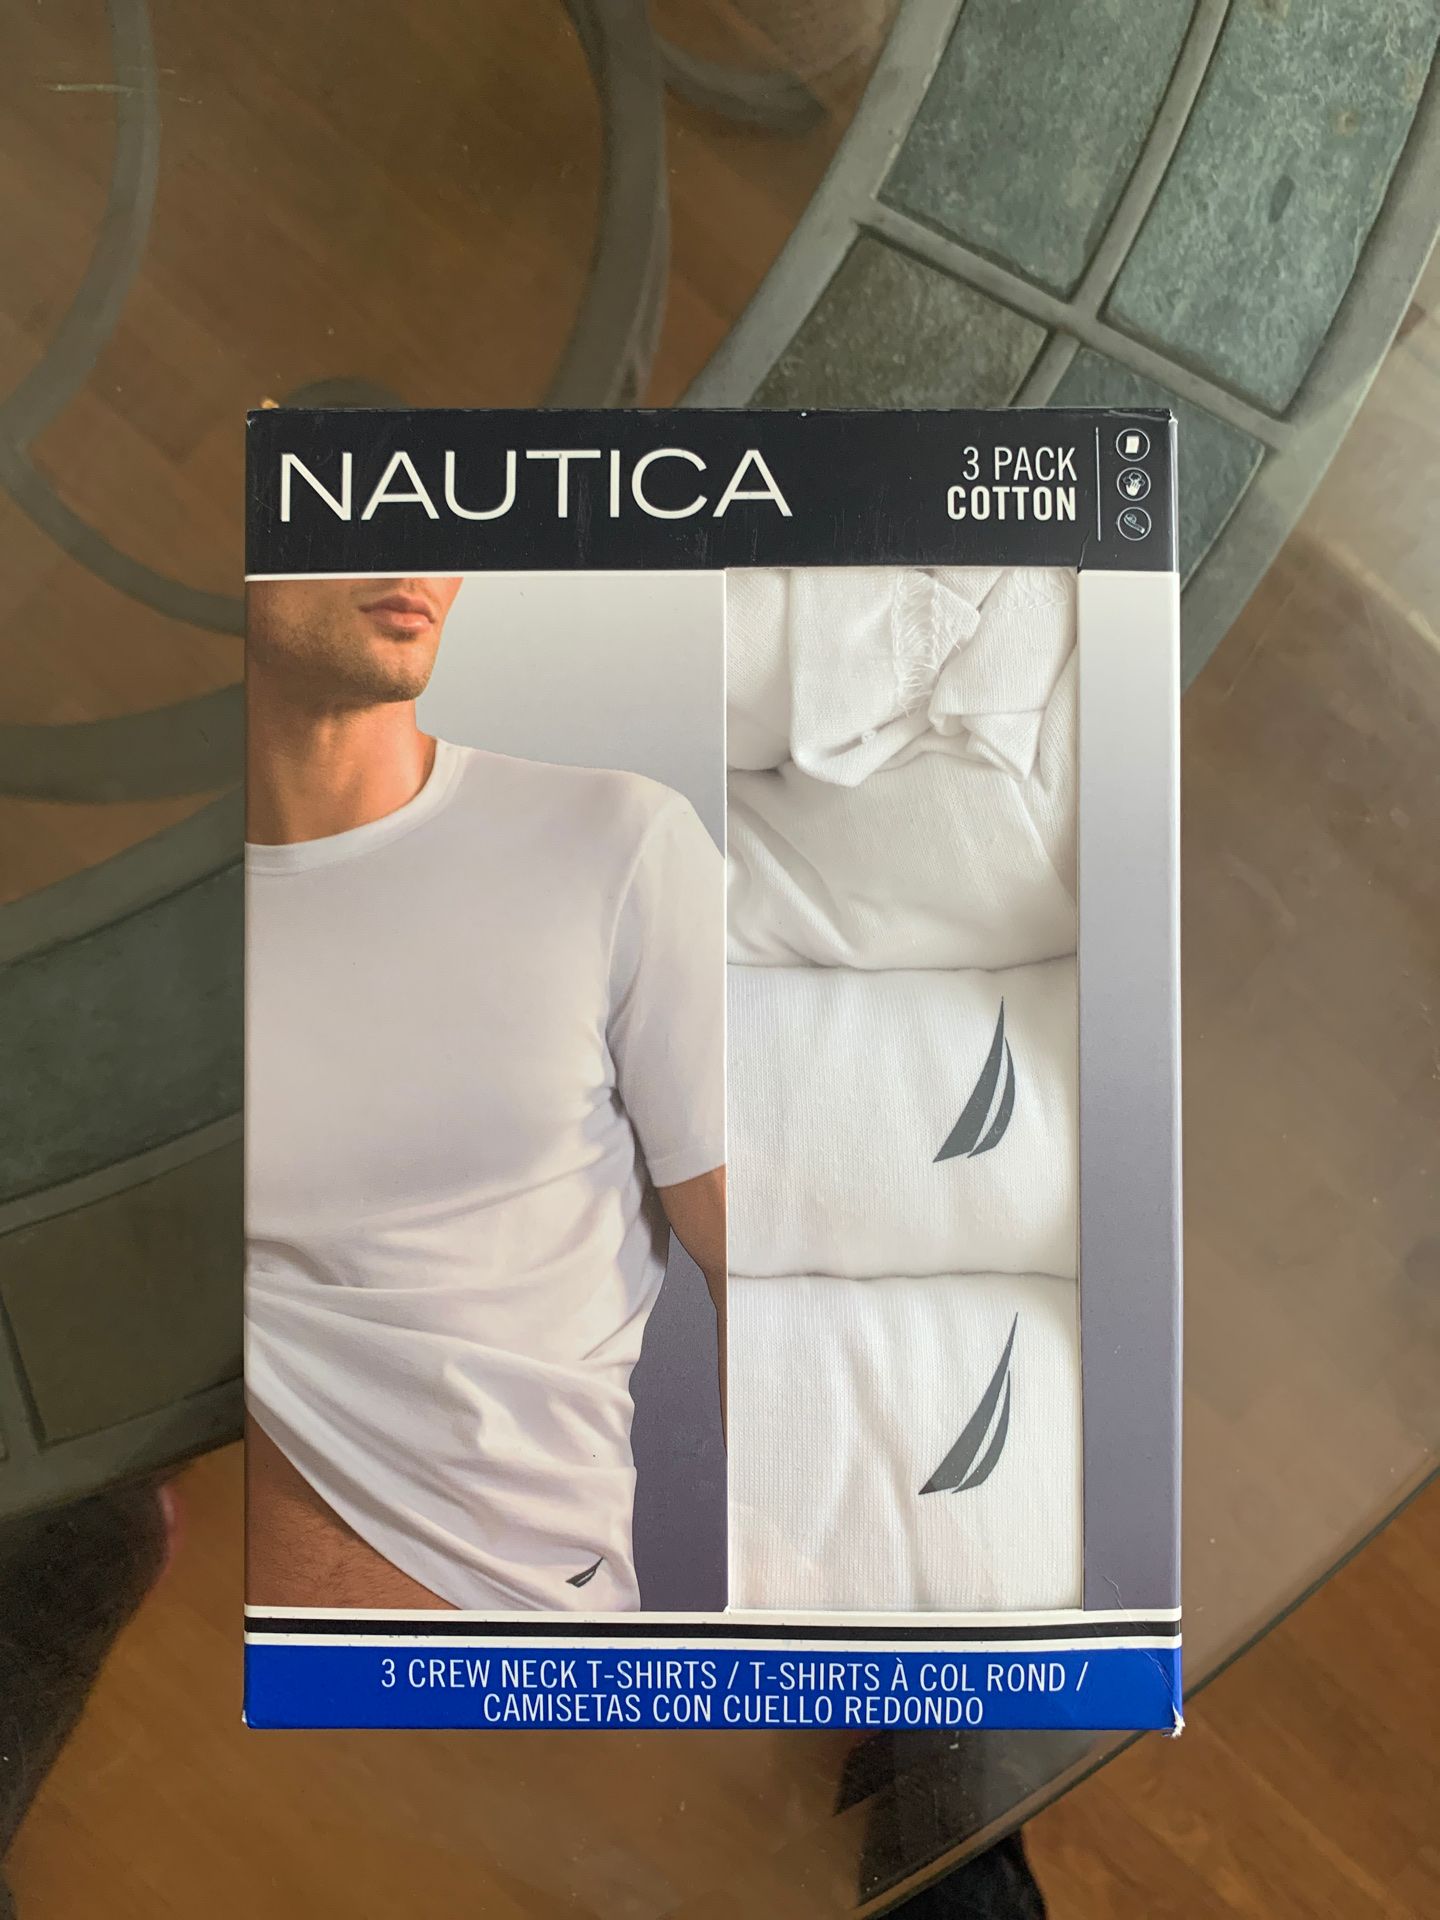 Nautical White T-shirt’s 3 Pack SZ Medium